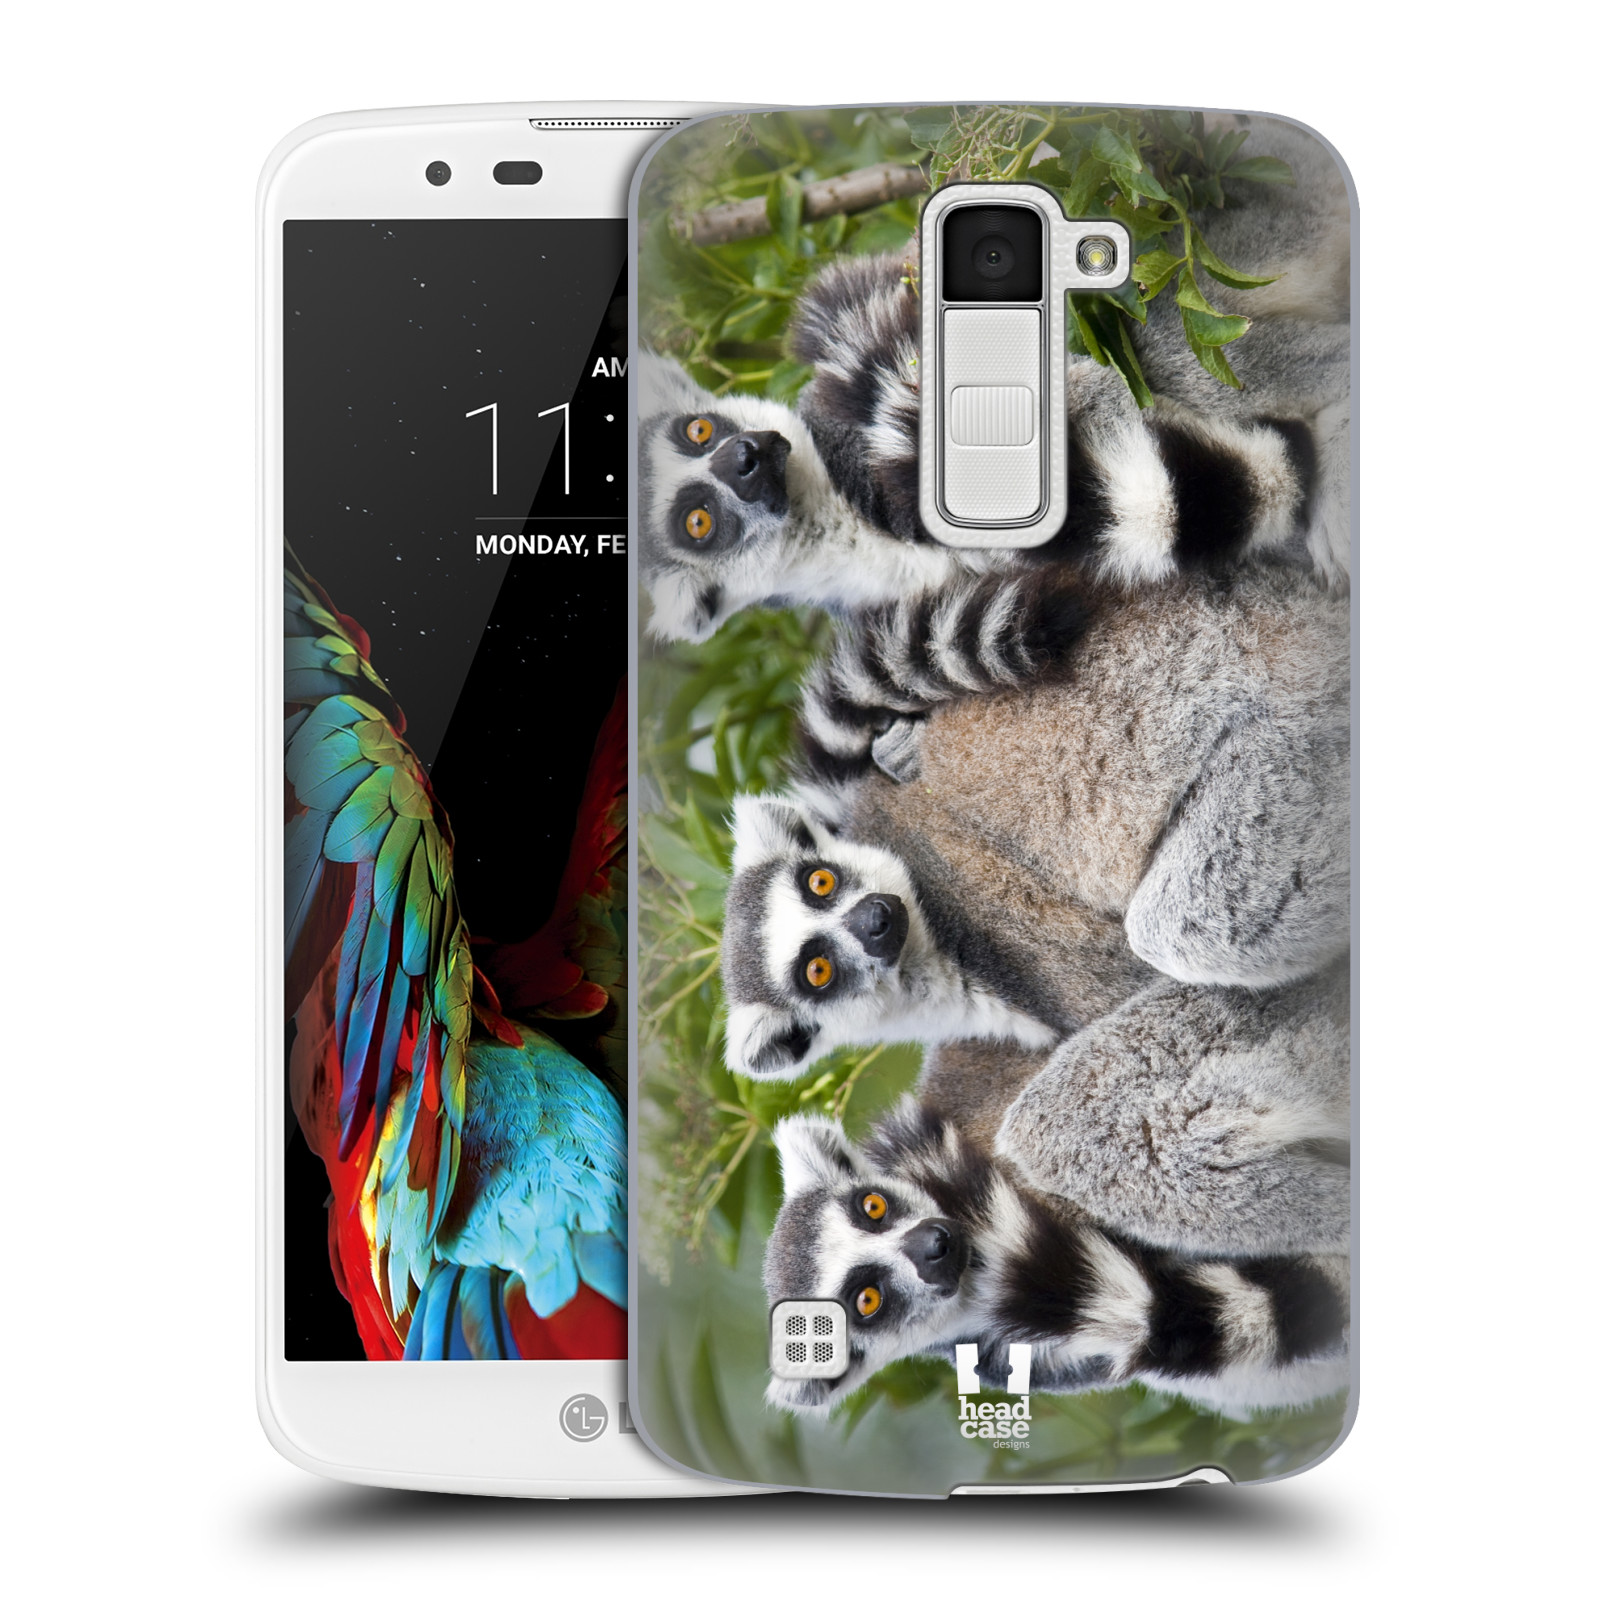 HEAD CASE plastový obal na mobil LG K10 vzor slavná zvířata foto lemur